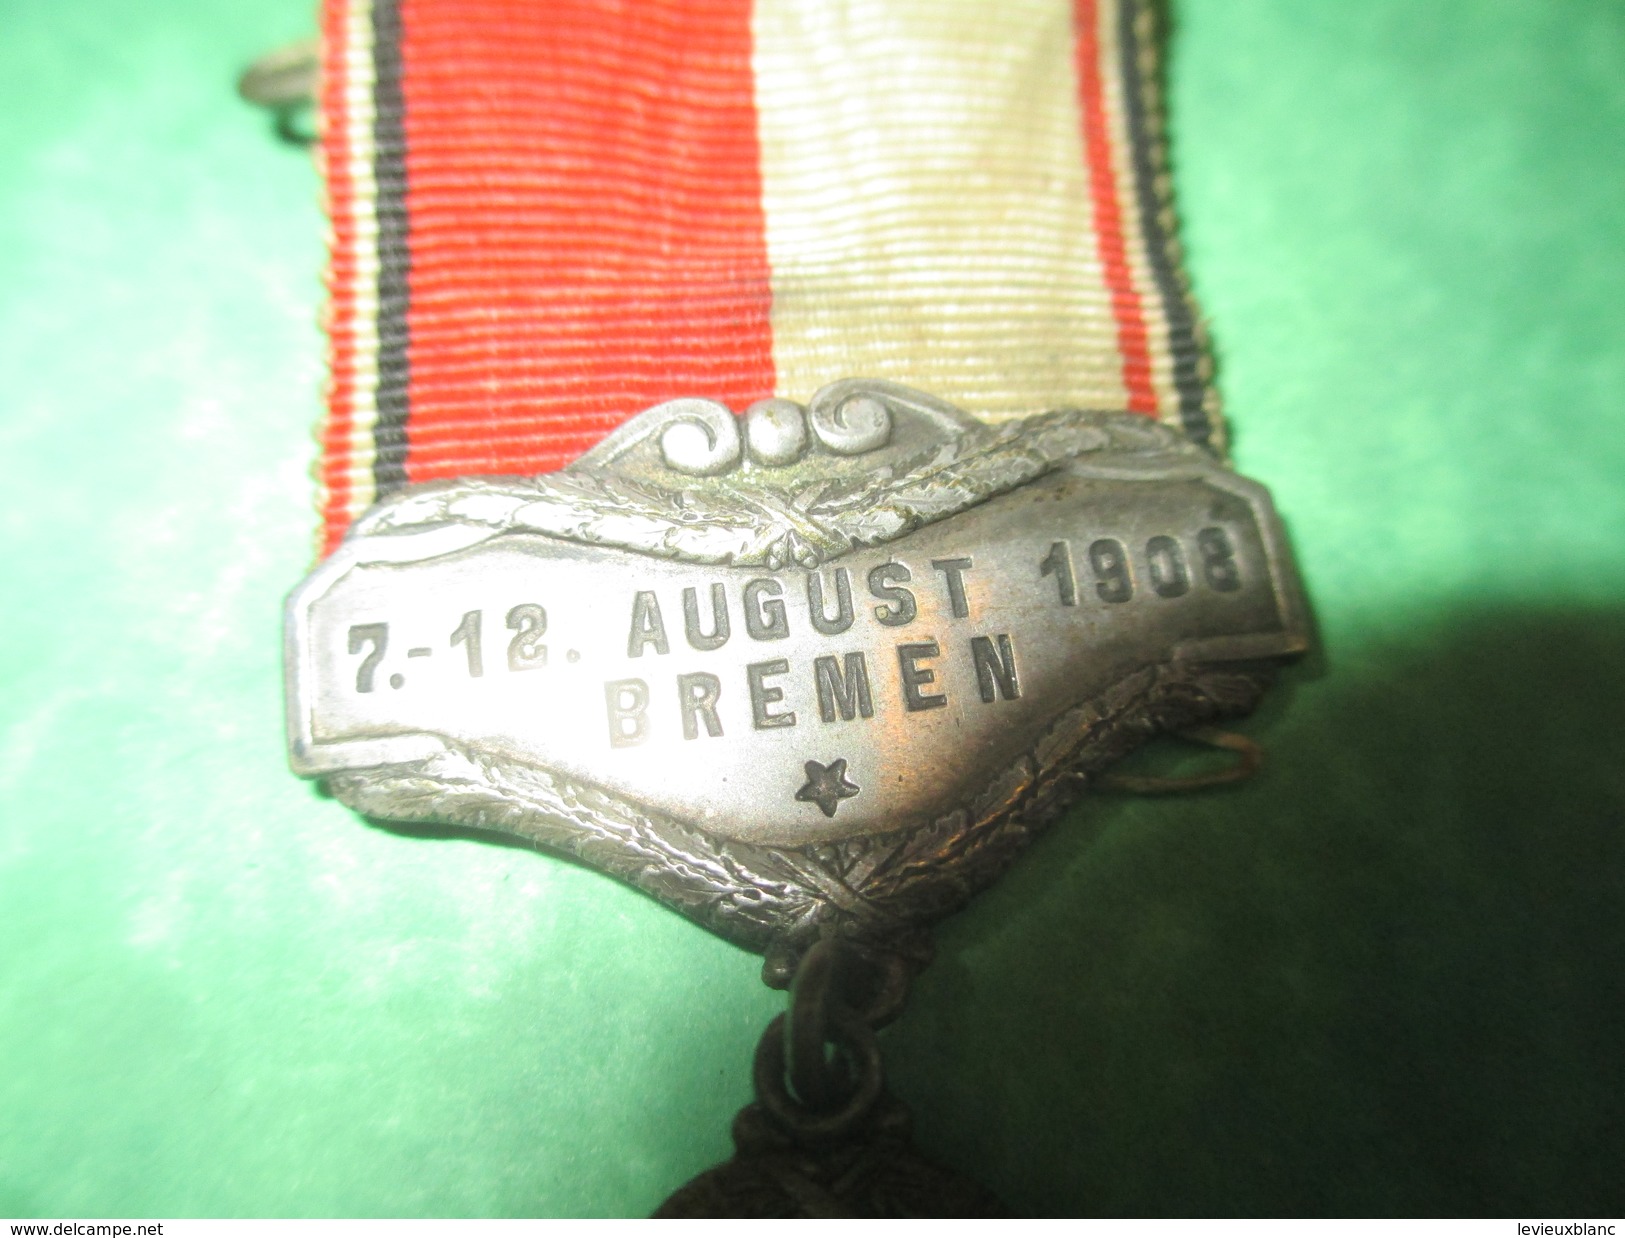 Médaille Pendante à épingle/Sports/Fédération Cycliste Allemande/ BREME//1908          SPO160 - Cycling